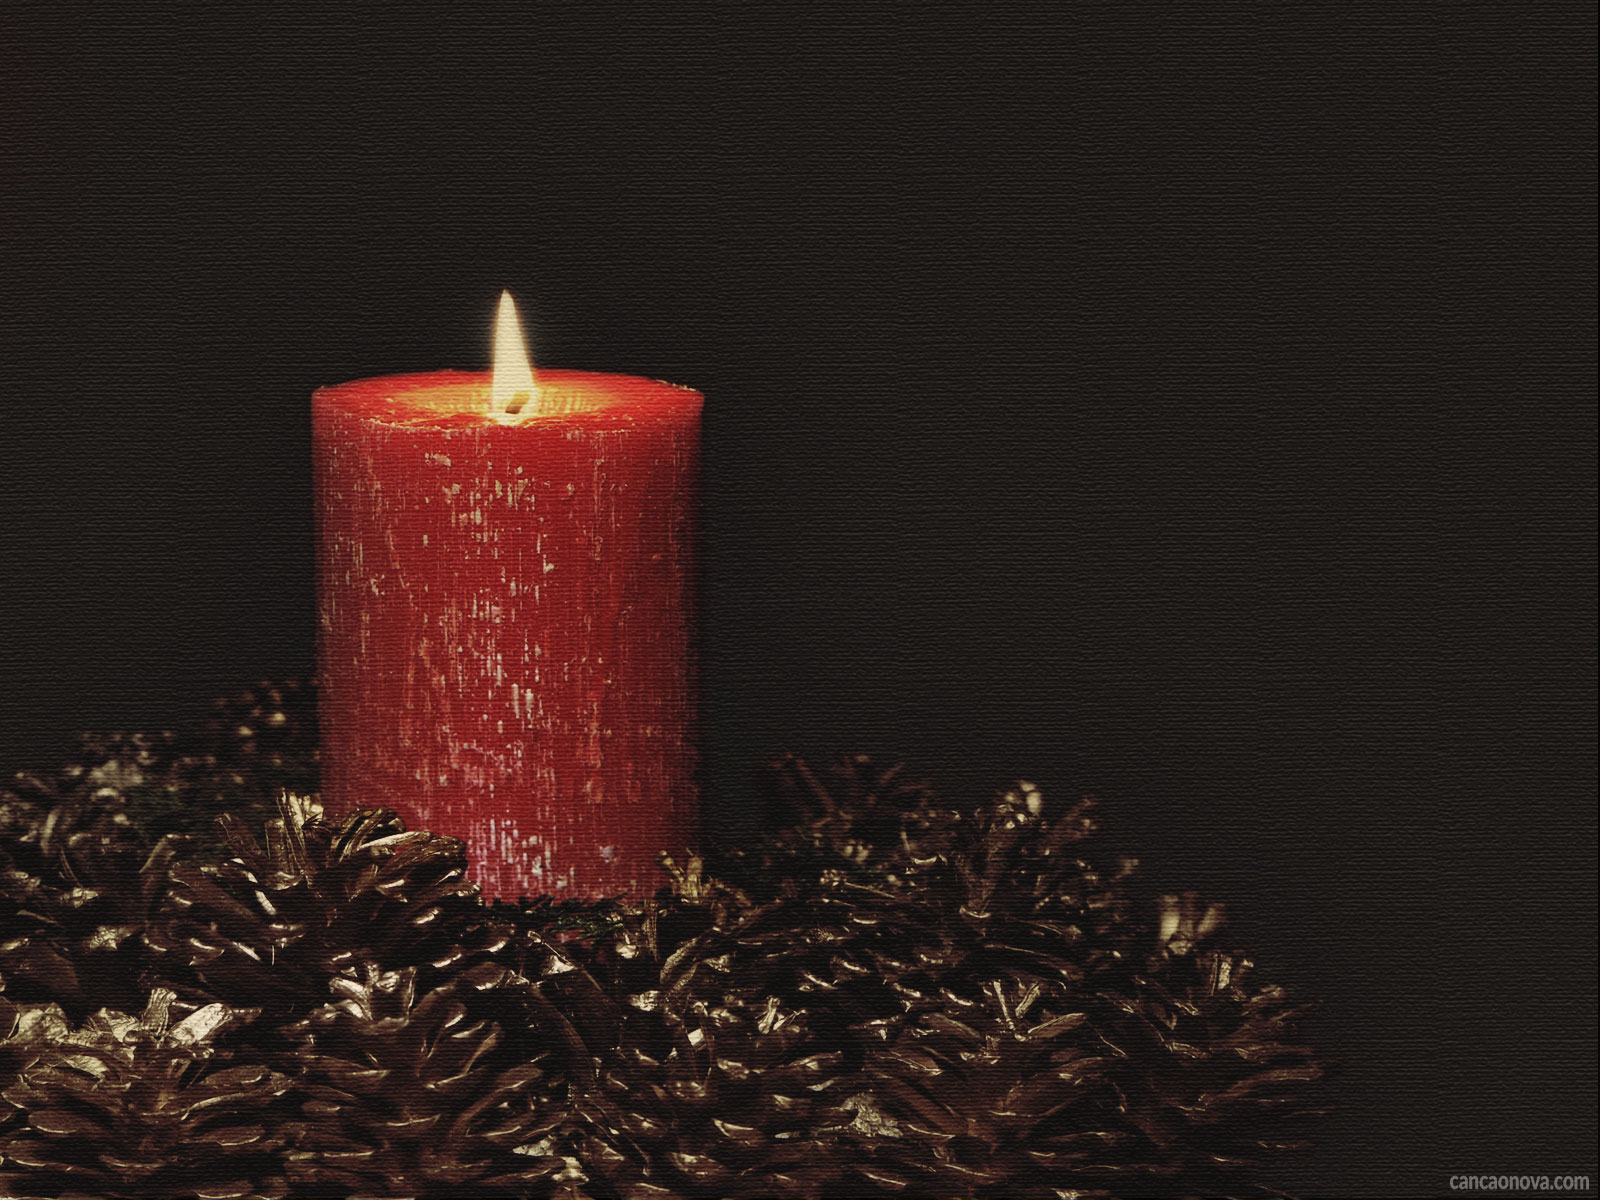 1º domingo do Advento: qual o significado da vela vermelha?